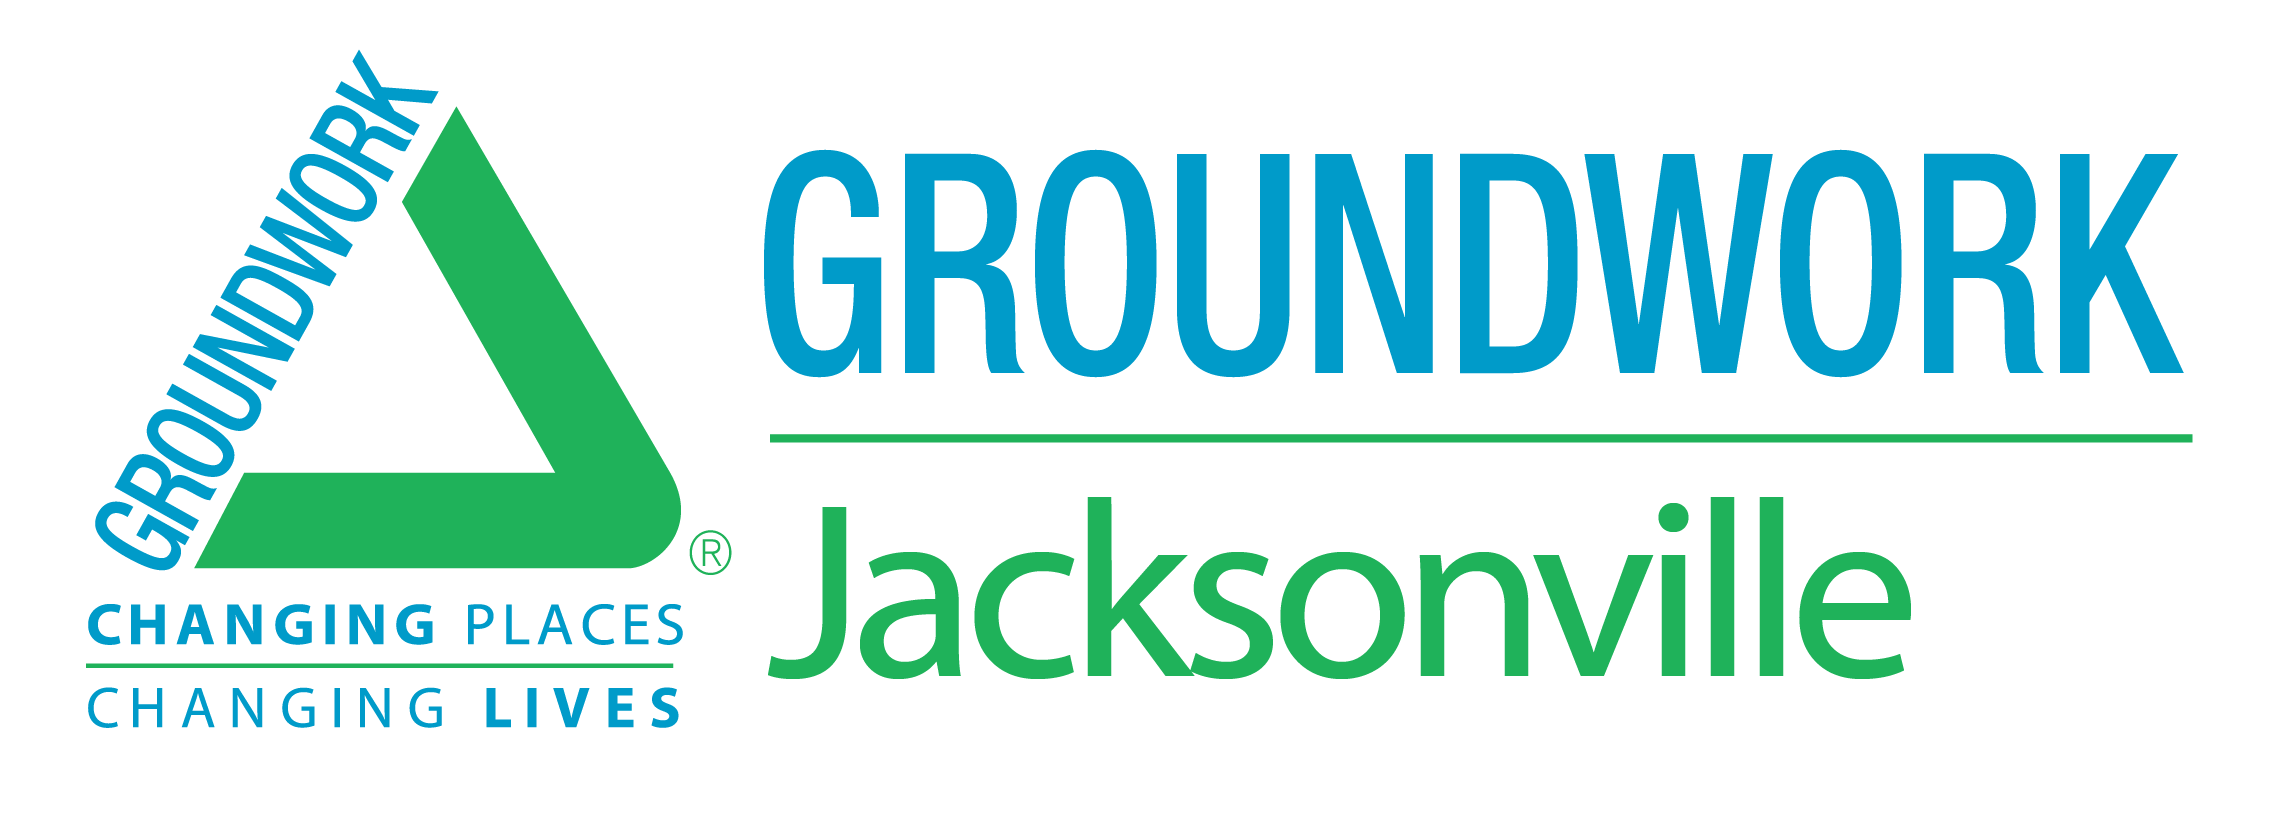 Jacksonville Logo - Groundwork Jacksonville